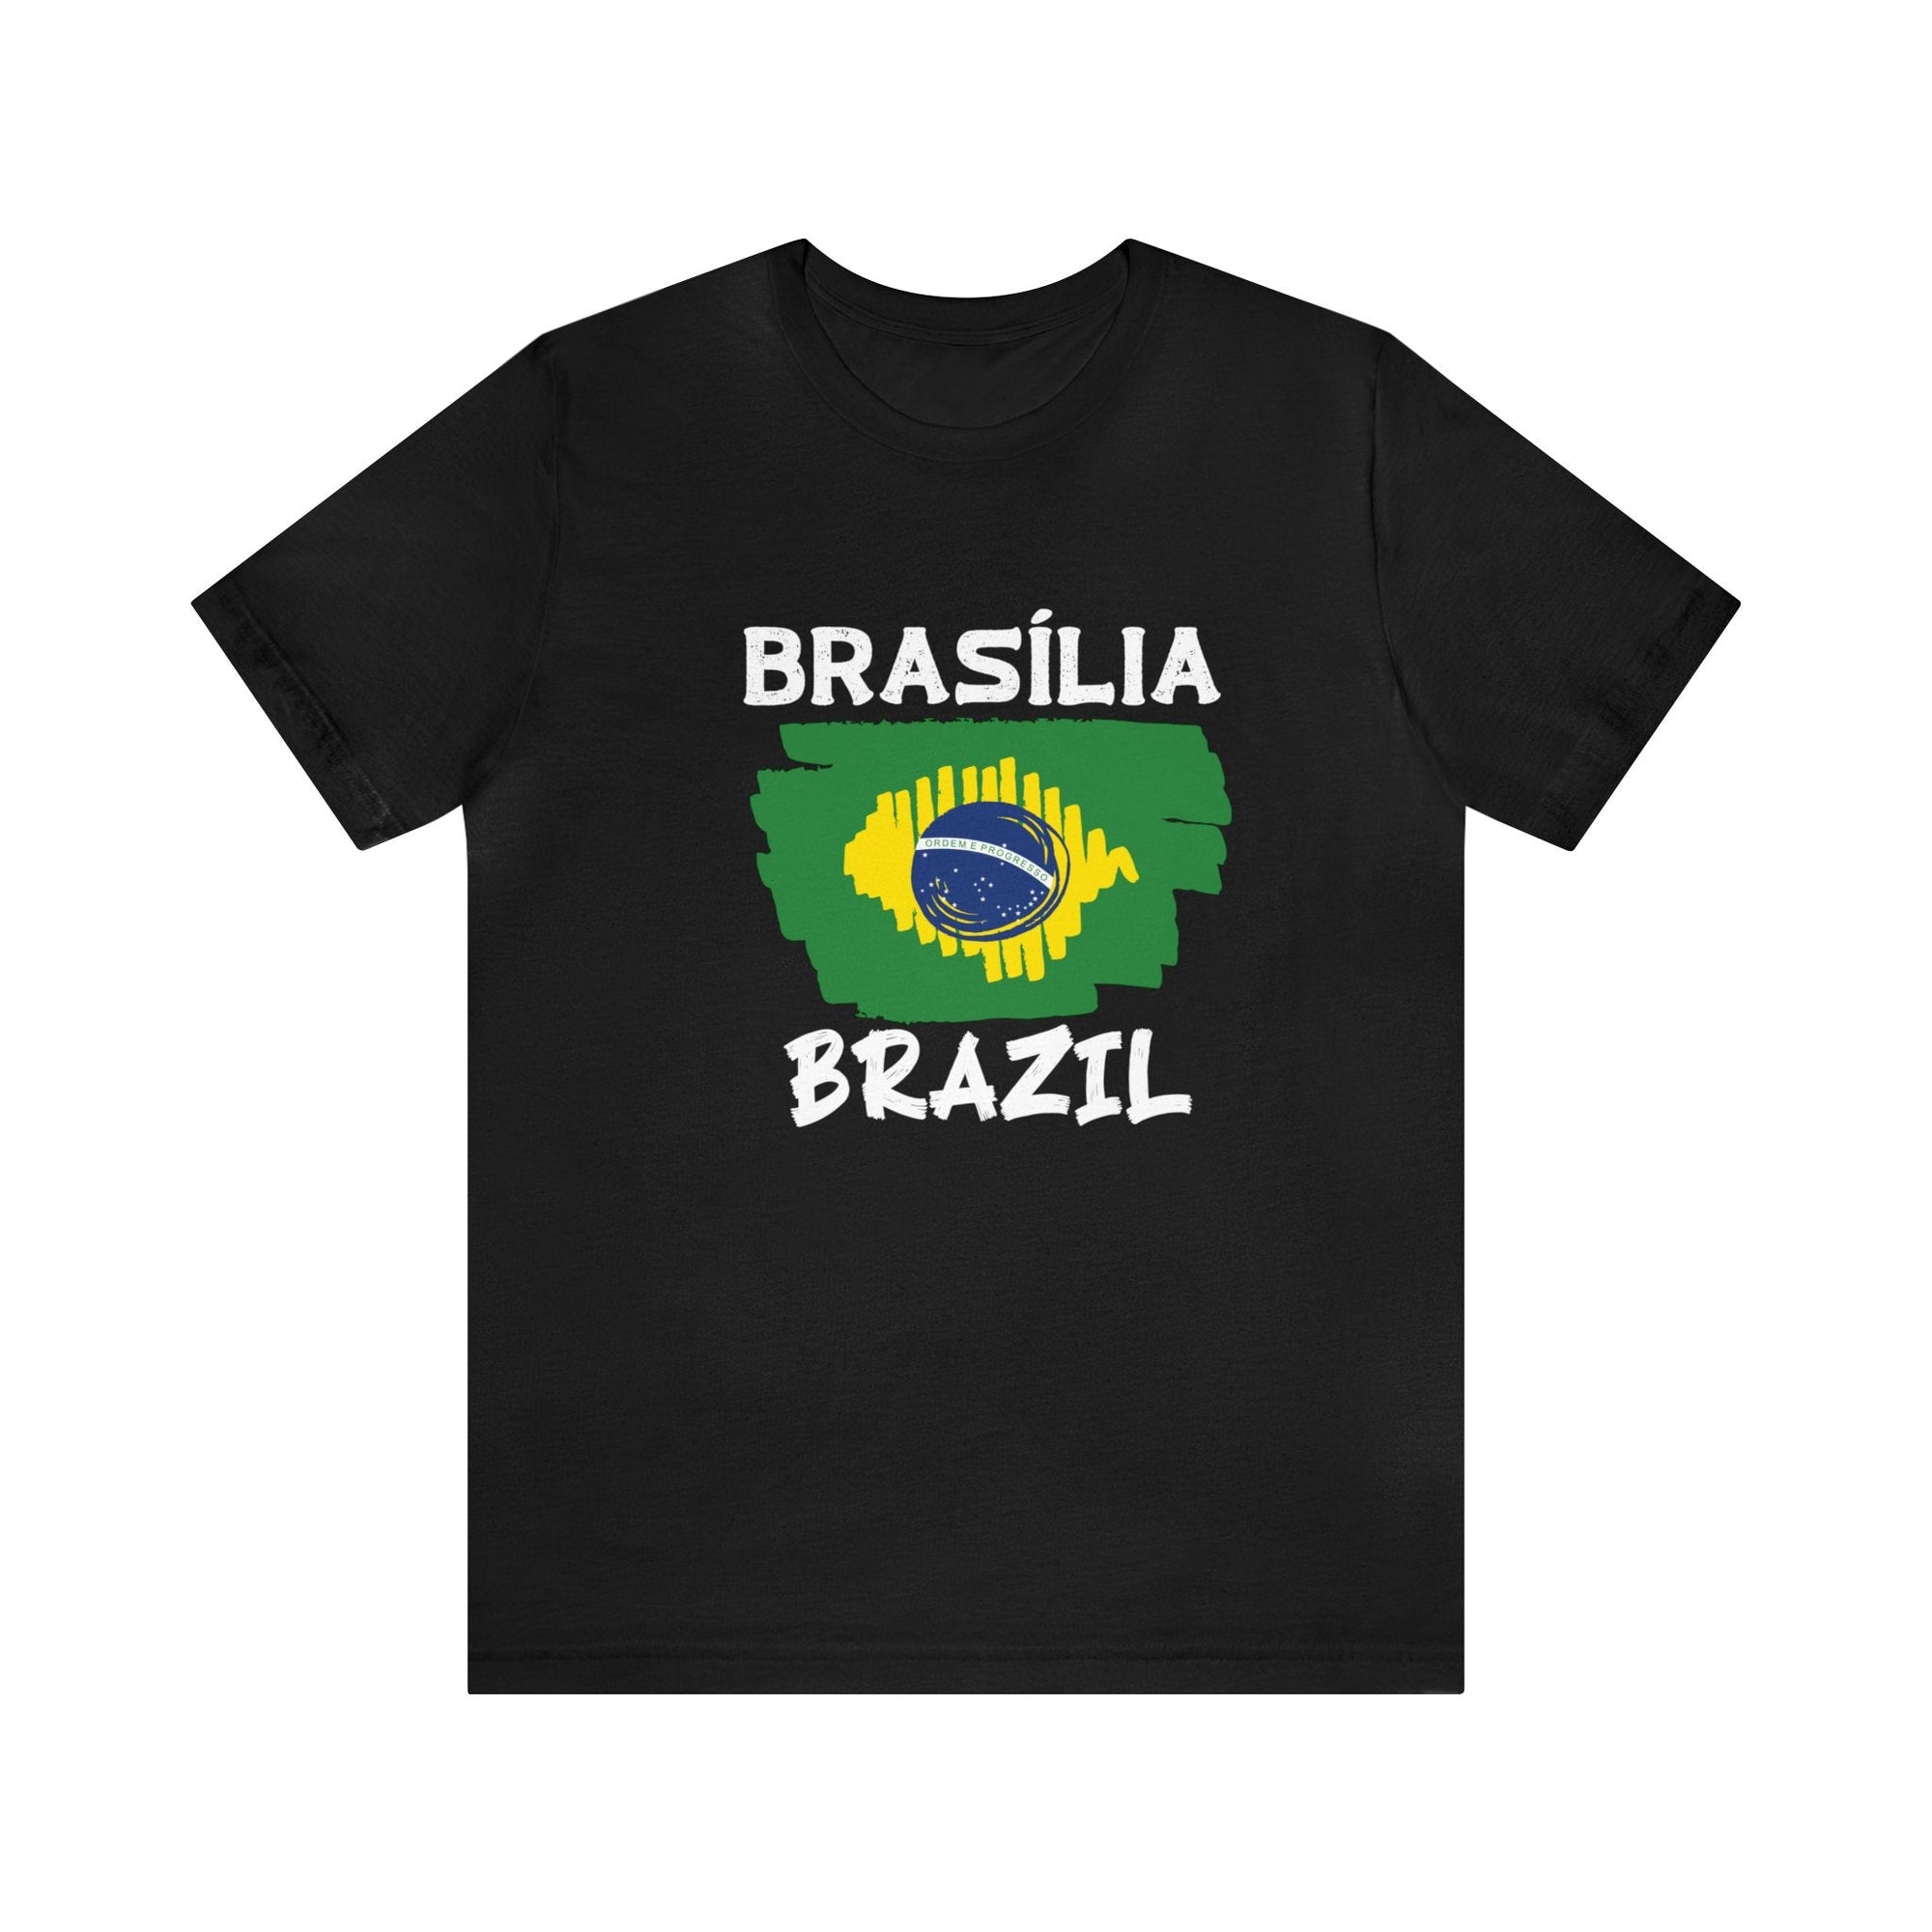 BRASILIA - CHIC DESIGN, PREMIUM SHORT SLEEVE TEE